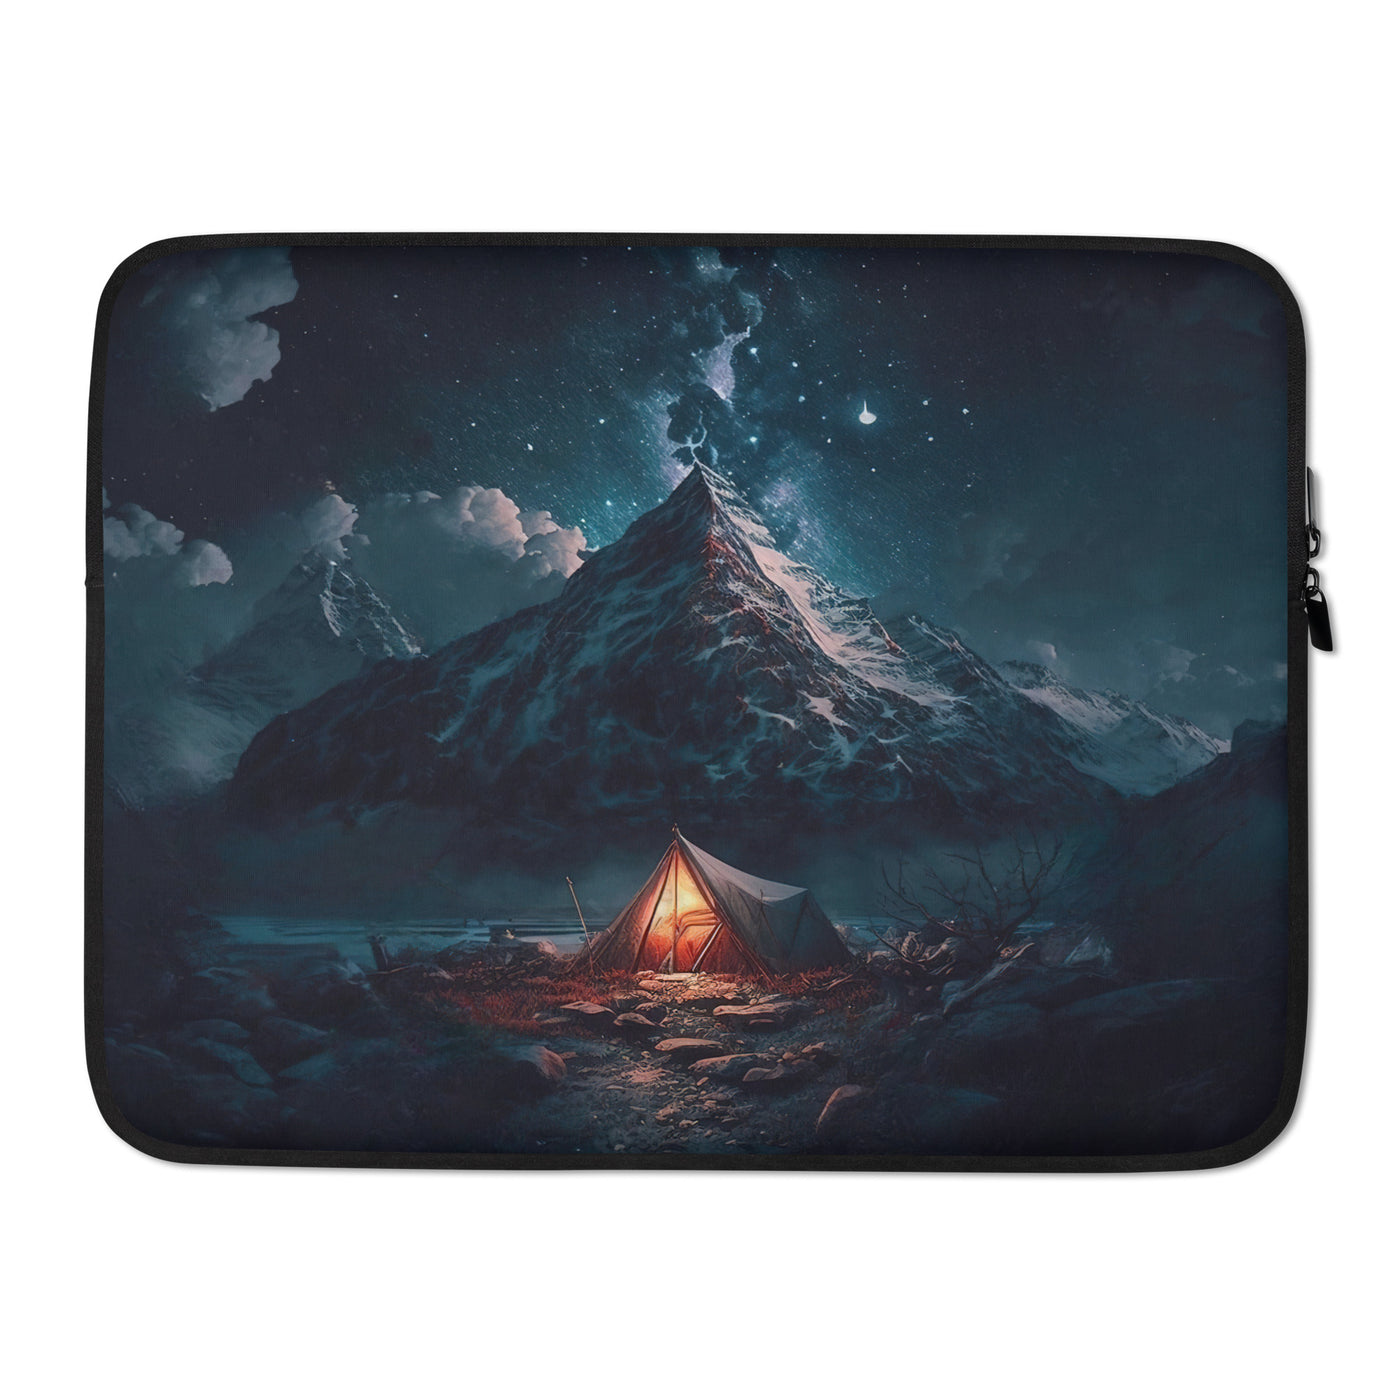 Zelt und Berg in der Nacht - Sterne am Himmel - Landschaftsmalerei - Laptophülle camping xxx 15″